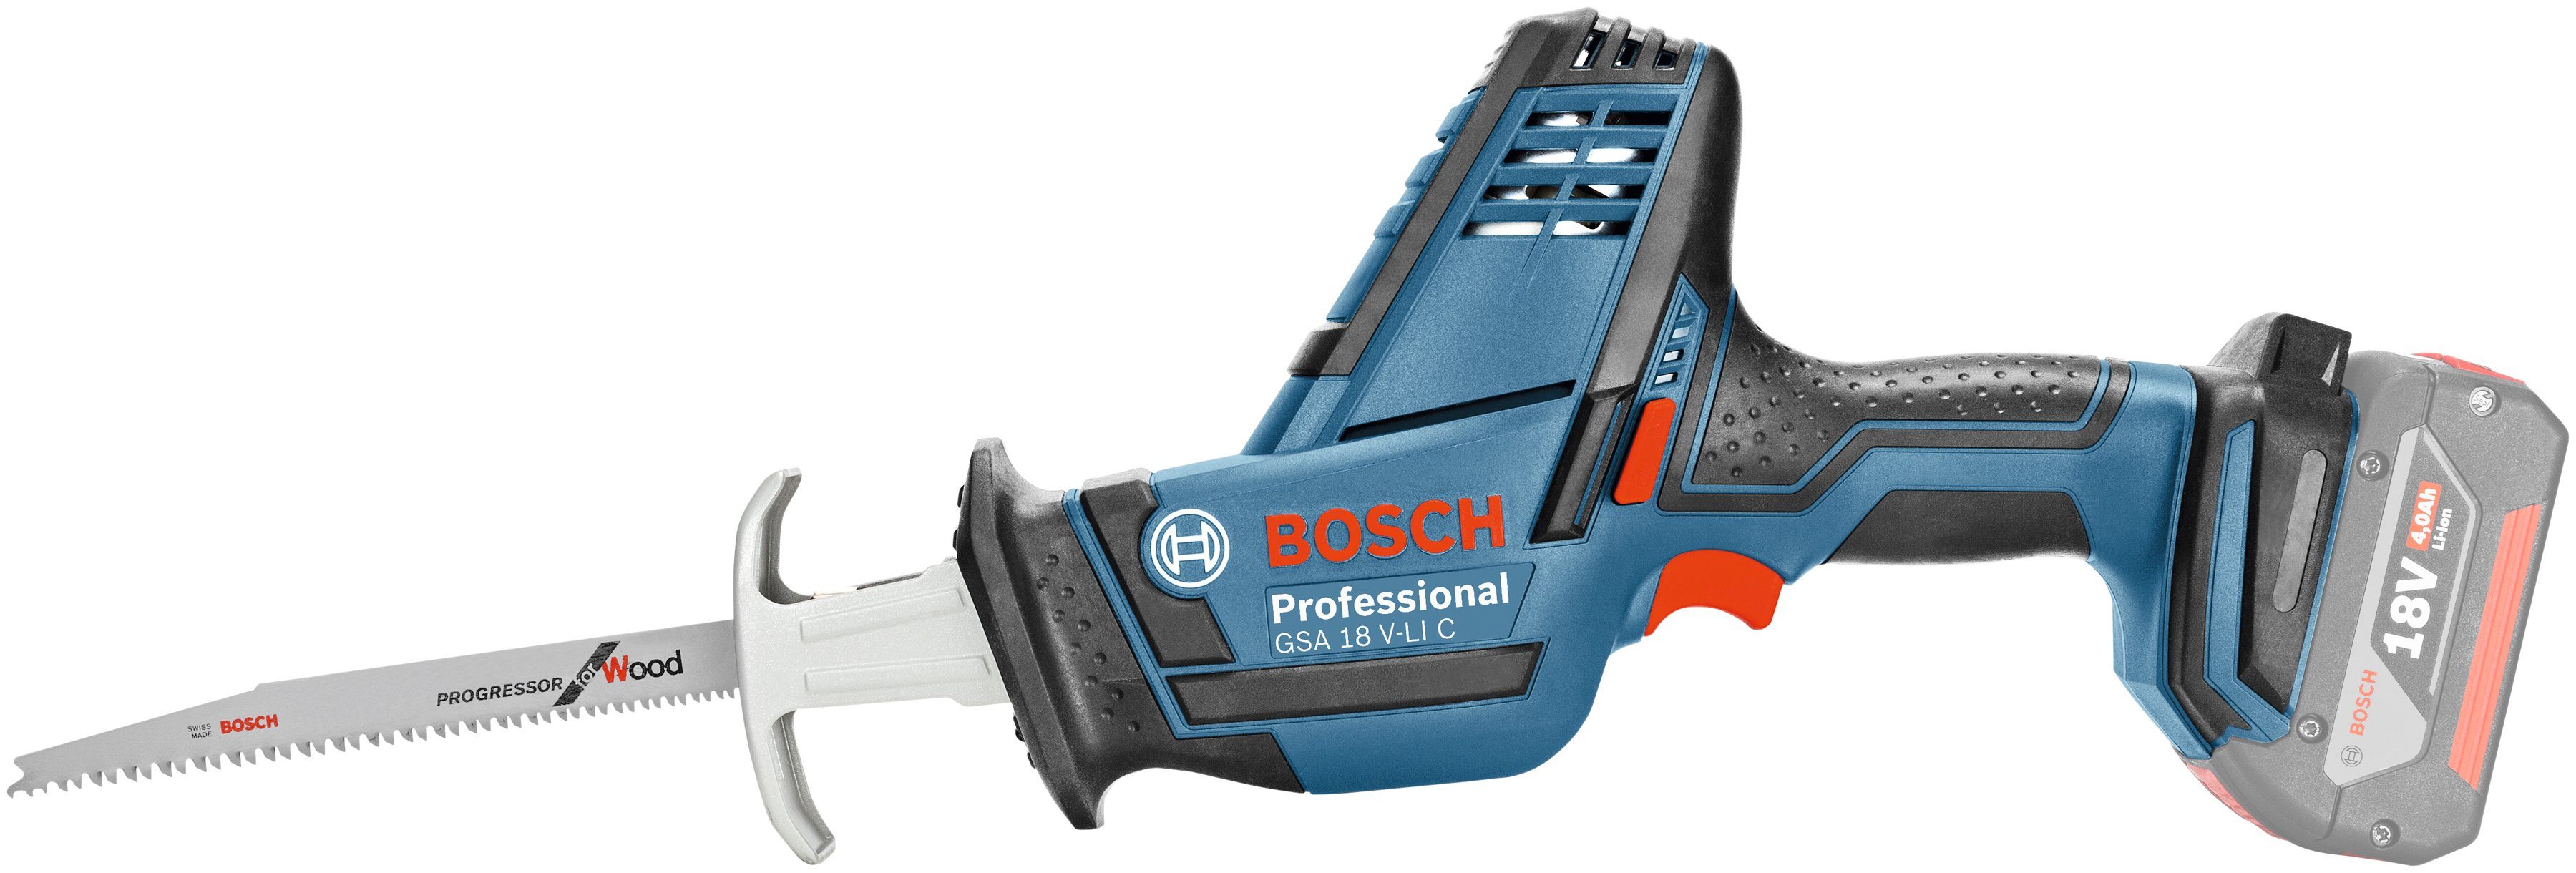 Bosch Professional Akku-Säbelsäge GSA 18 V-LI C, ohne Akku oder Ladegerät,  Verwendungszweck: Zum Sägen von Profilen, Brettern, Latten und Rohren